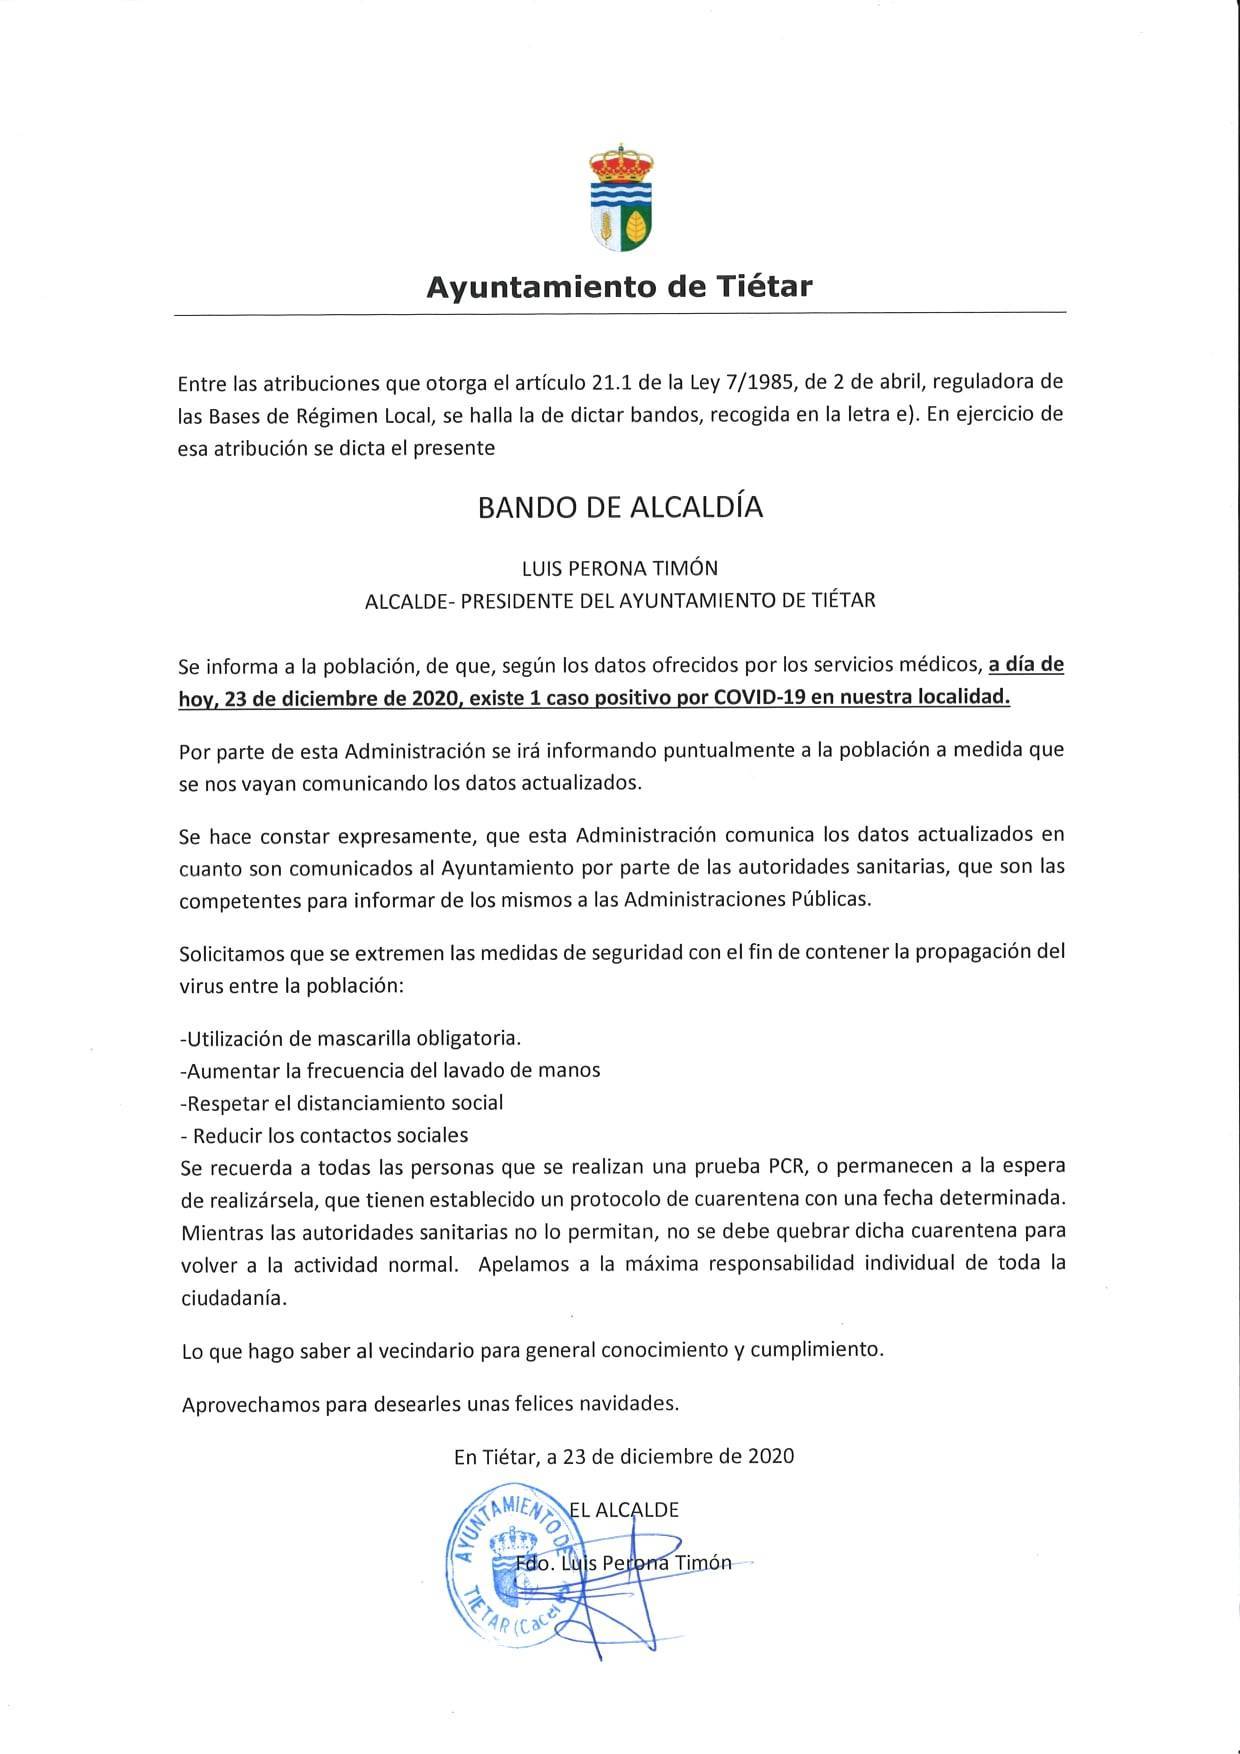 Un caso positivo de COVID-19 (diciembre 2020) - Tiétar (Cáceres)